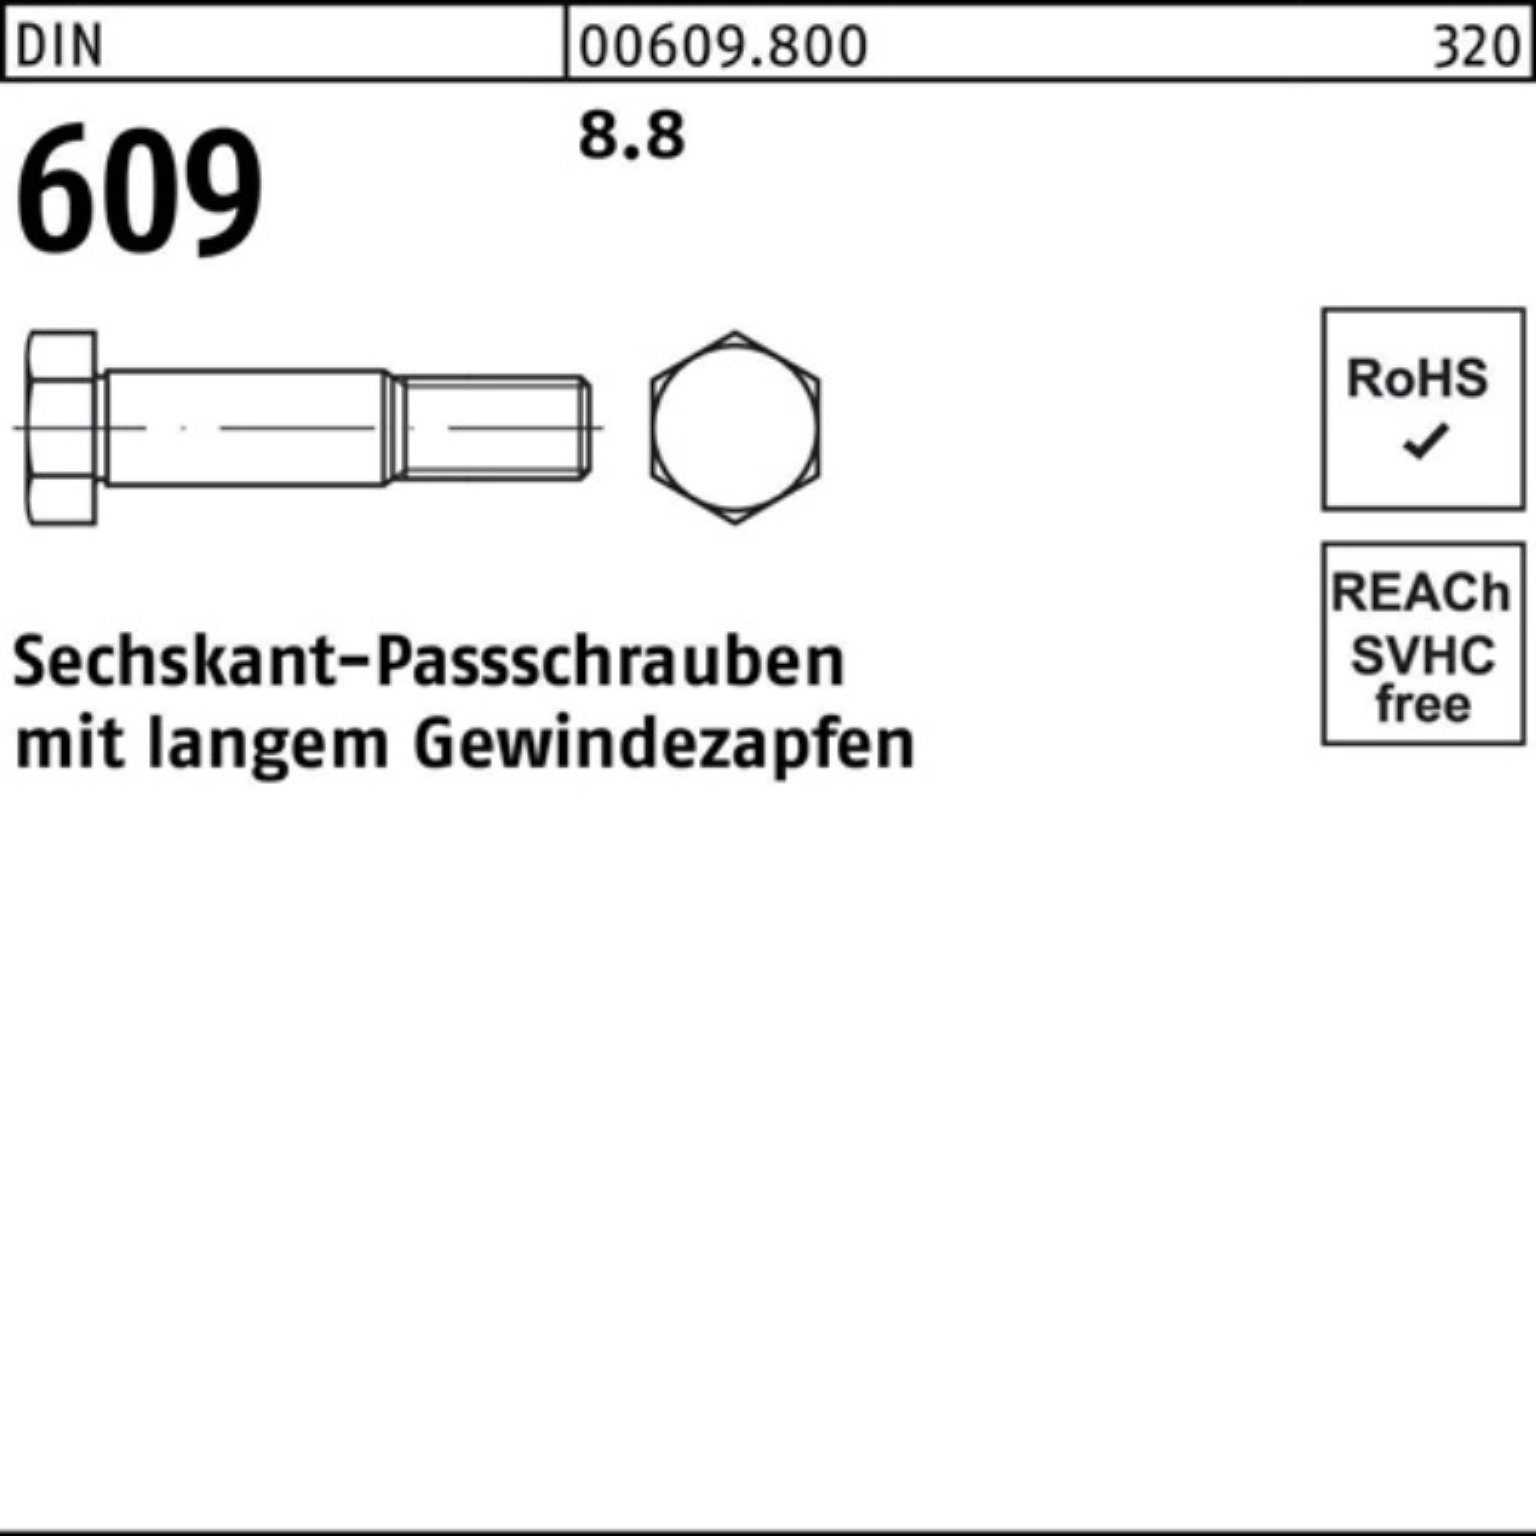 Sechskantpassschraube Gewindezapfen Reyher M12x 100er DIN Schraube langem Pack 45 609